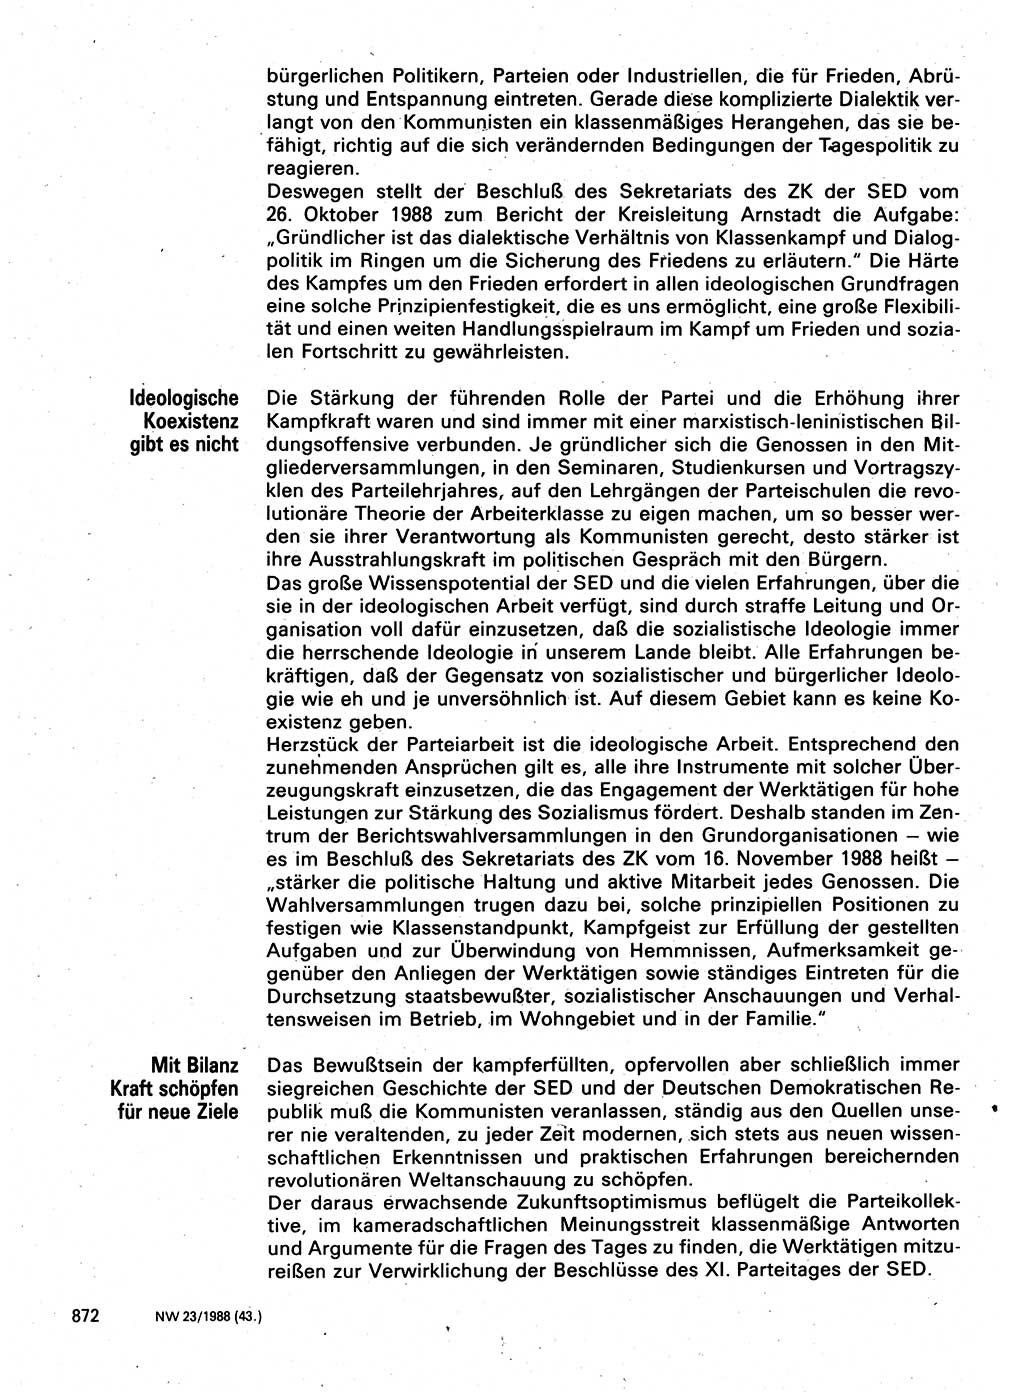 Neuer Weg (NW), Organ des Zentralkomitees (ZK) der SED (Sozialistische Einheitspartei Deutschlands) für Fragen des Parteilebens, 43. Jahrgang [Deutsche Demokratische Republik (DDR)] 1988, Seite 872 (NW ZK SED DDR 1988, S. 872)